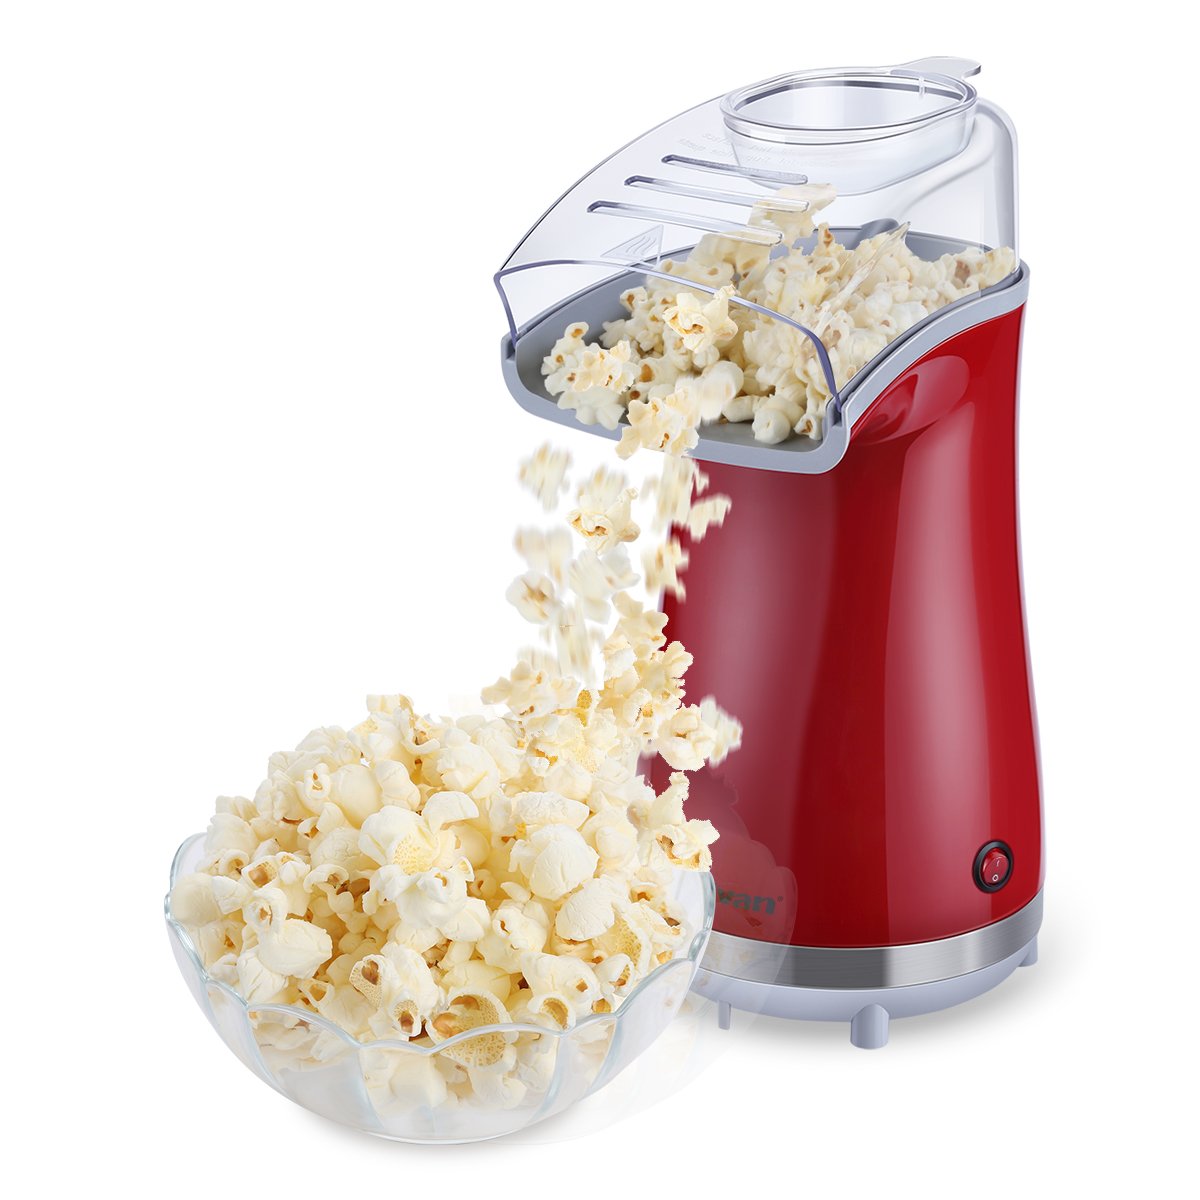 Win an Excelvan Air Popcorn Maker